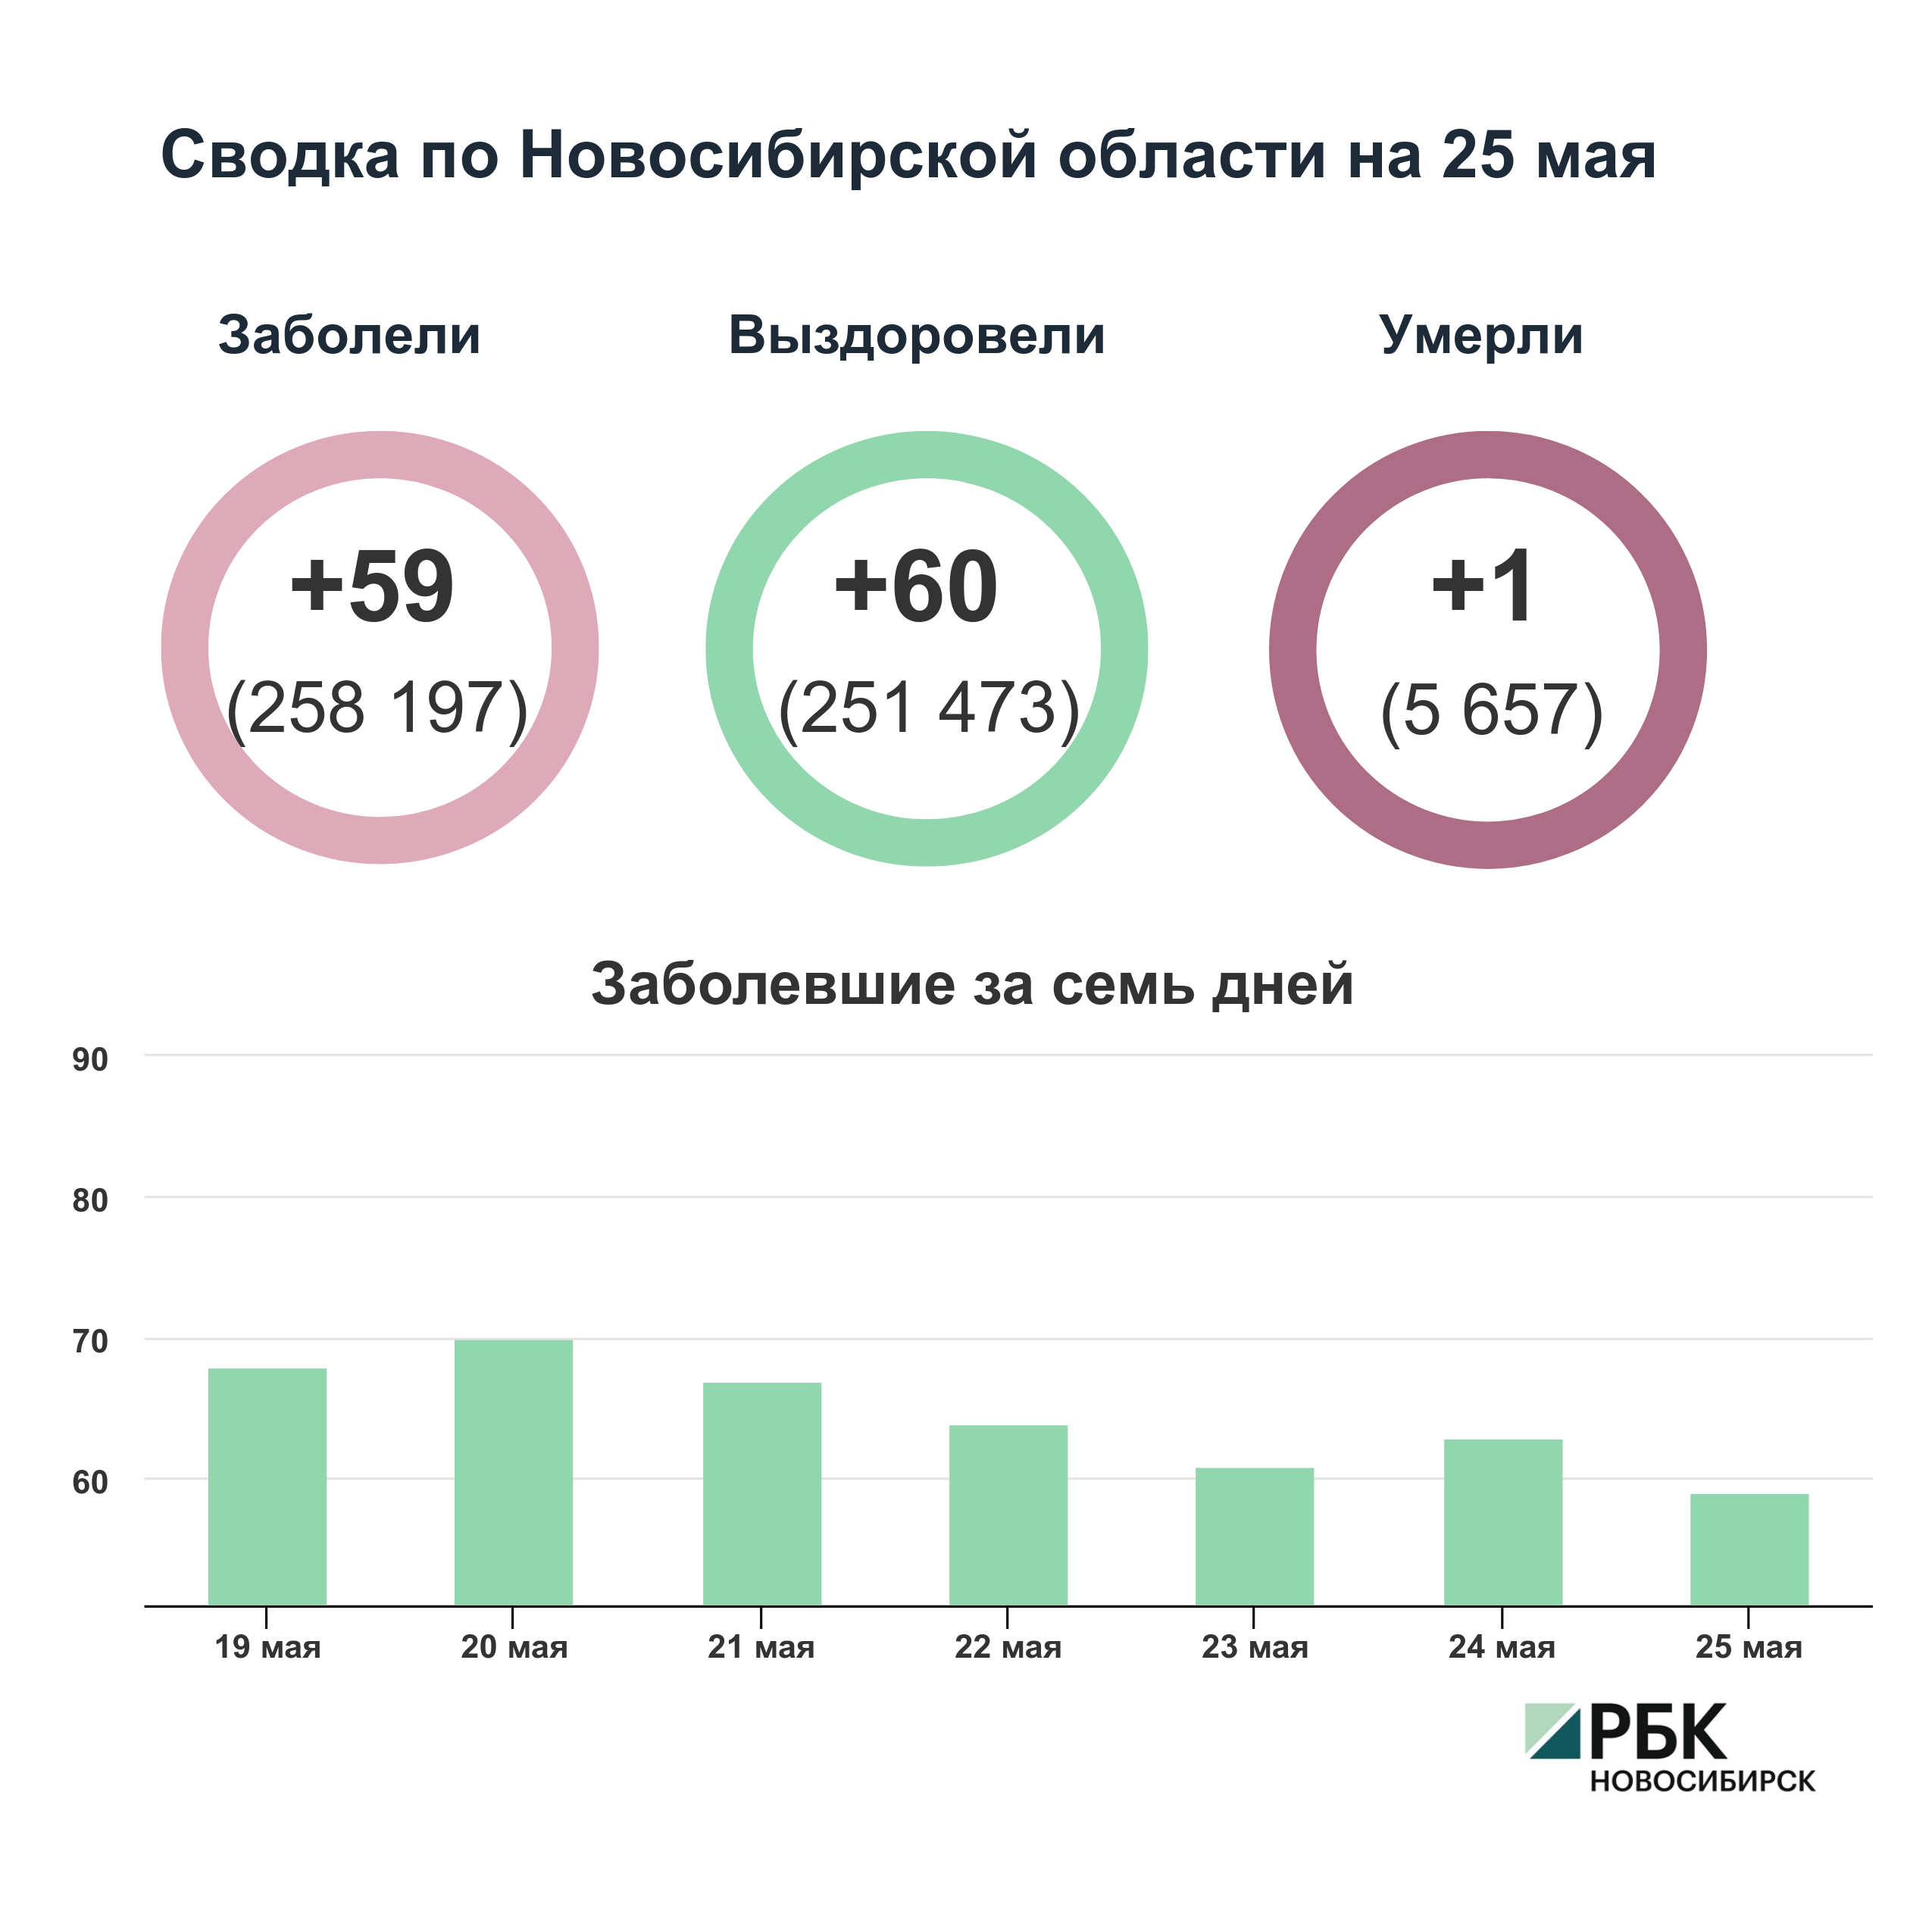 Коронавирус в Новосибирске: сводка на 25 мая